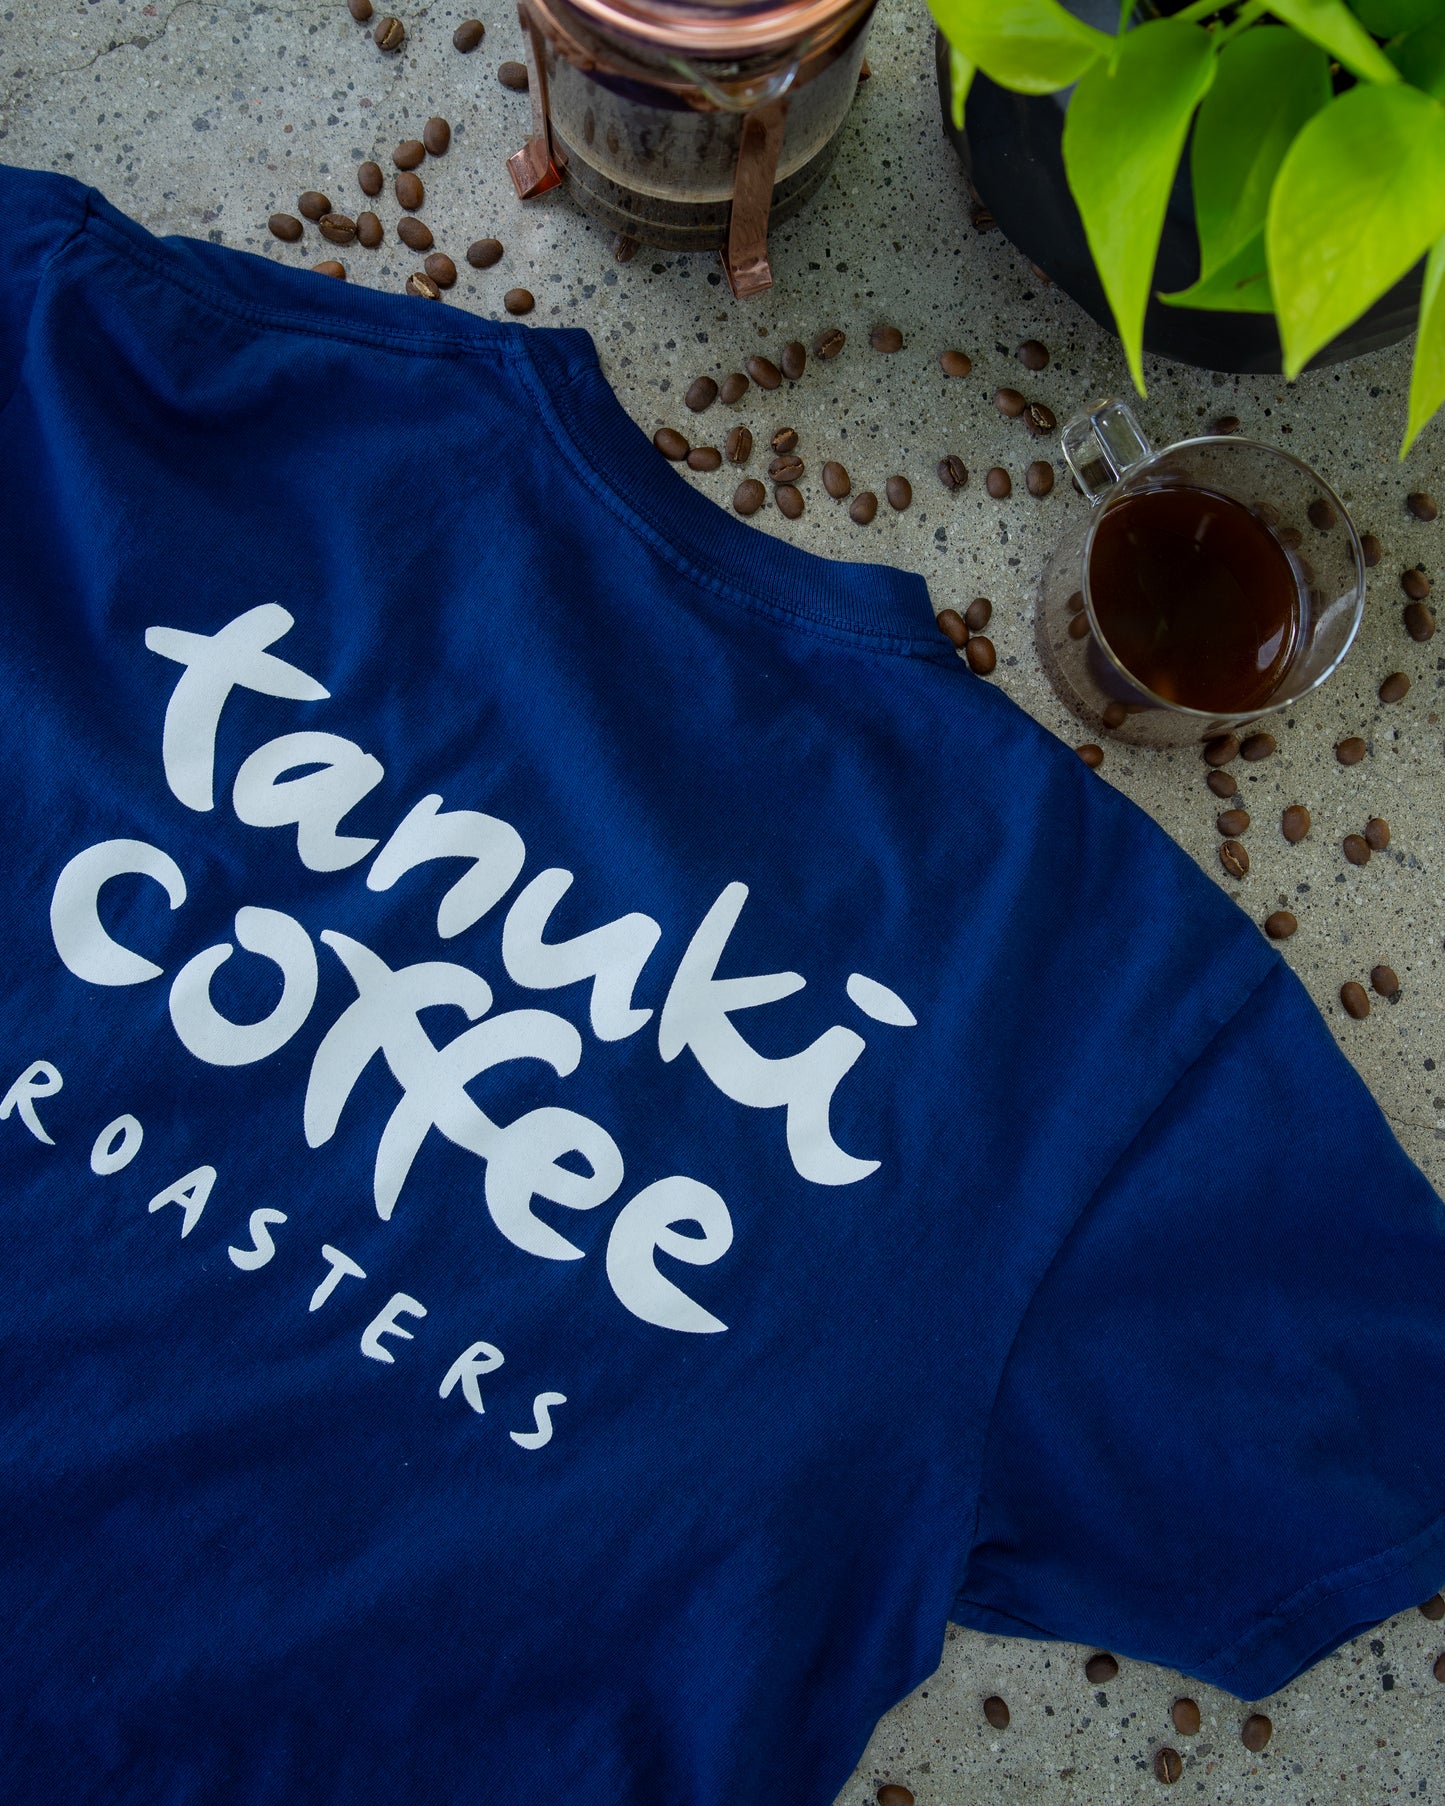 Tanuki Coffee Roasters Tees